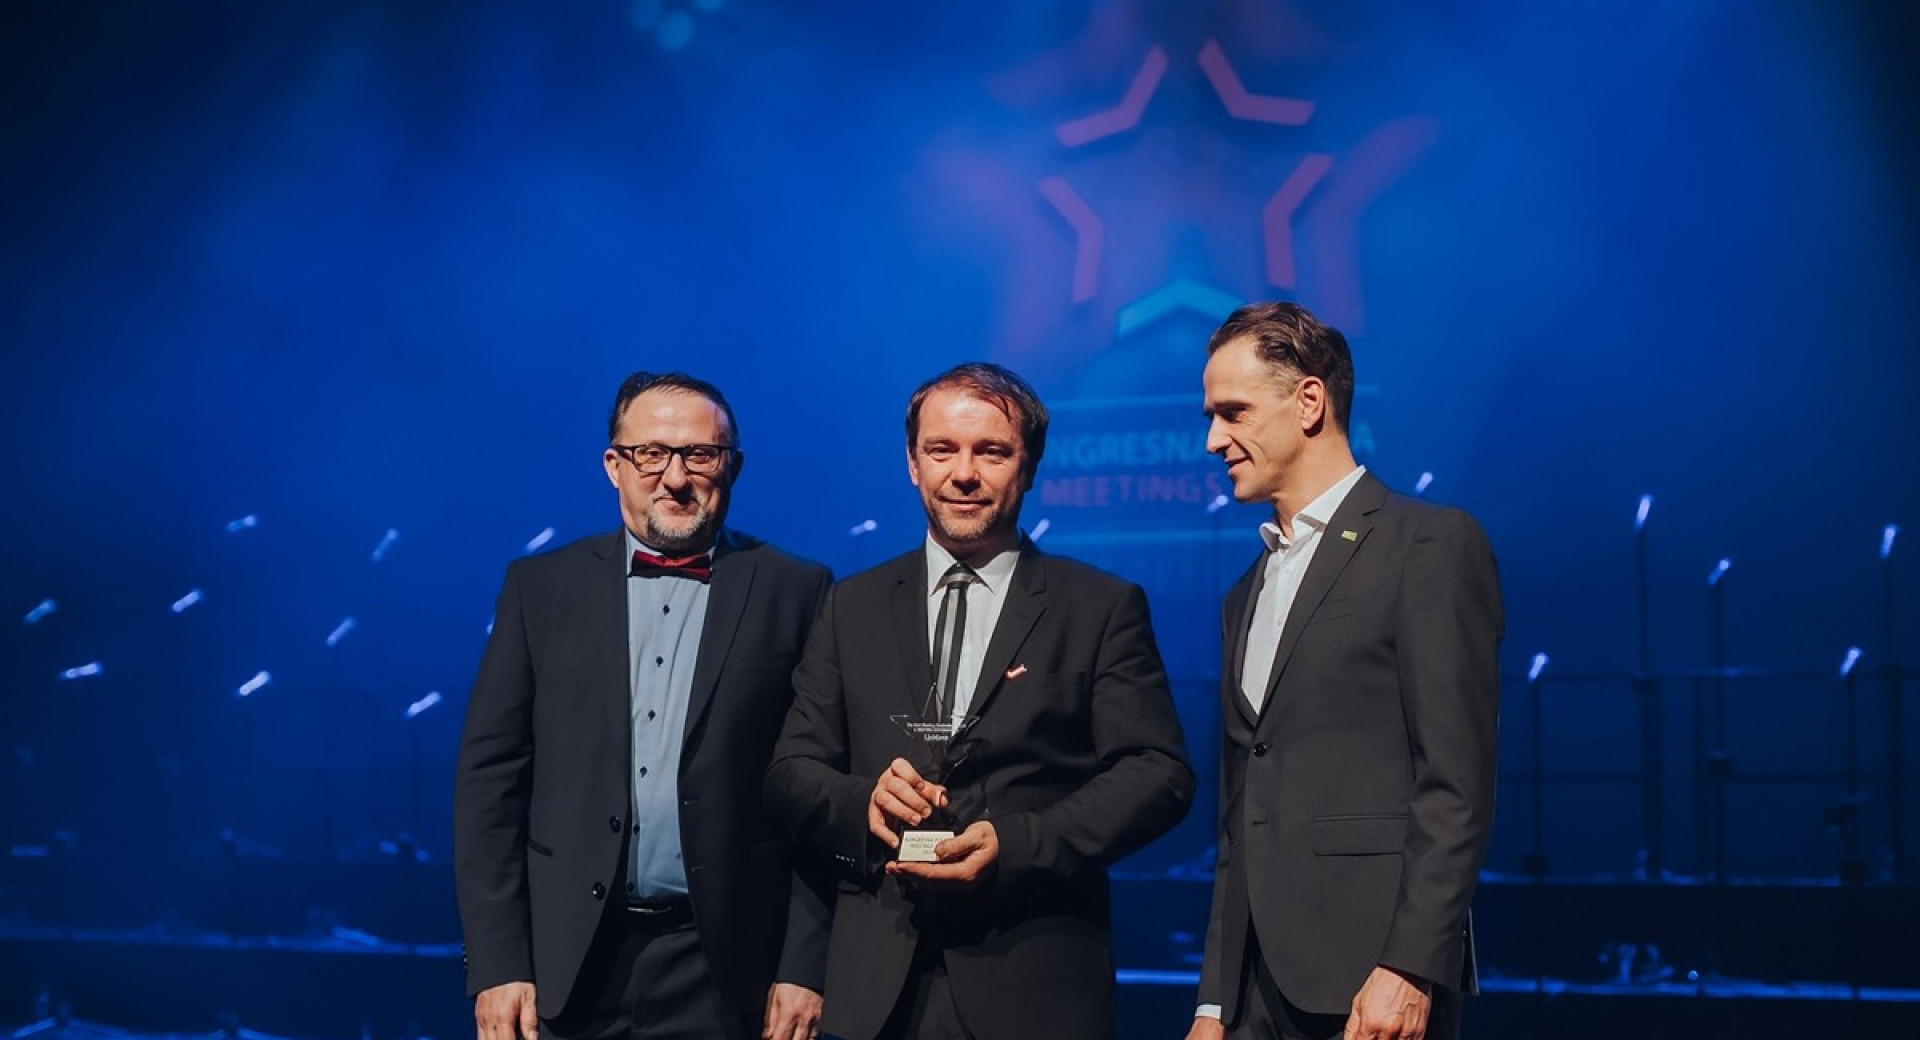 Predstavniki Turizma Ljubljana in organizatorjev dogodka na odru s prejeto nagrado Meeting Star Award.